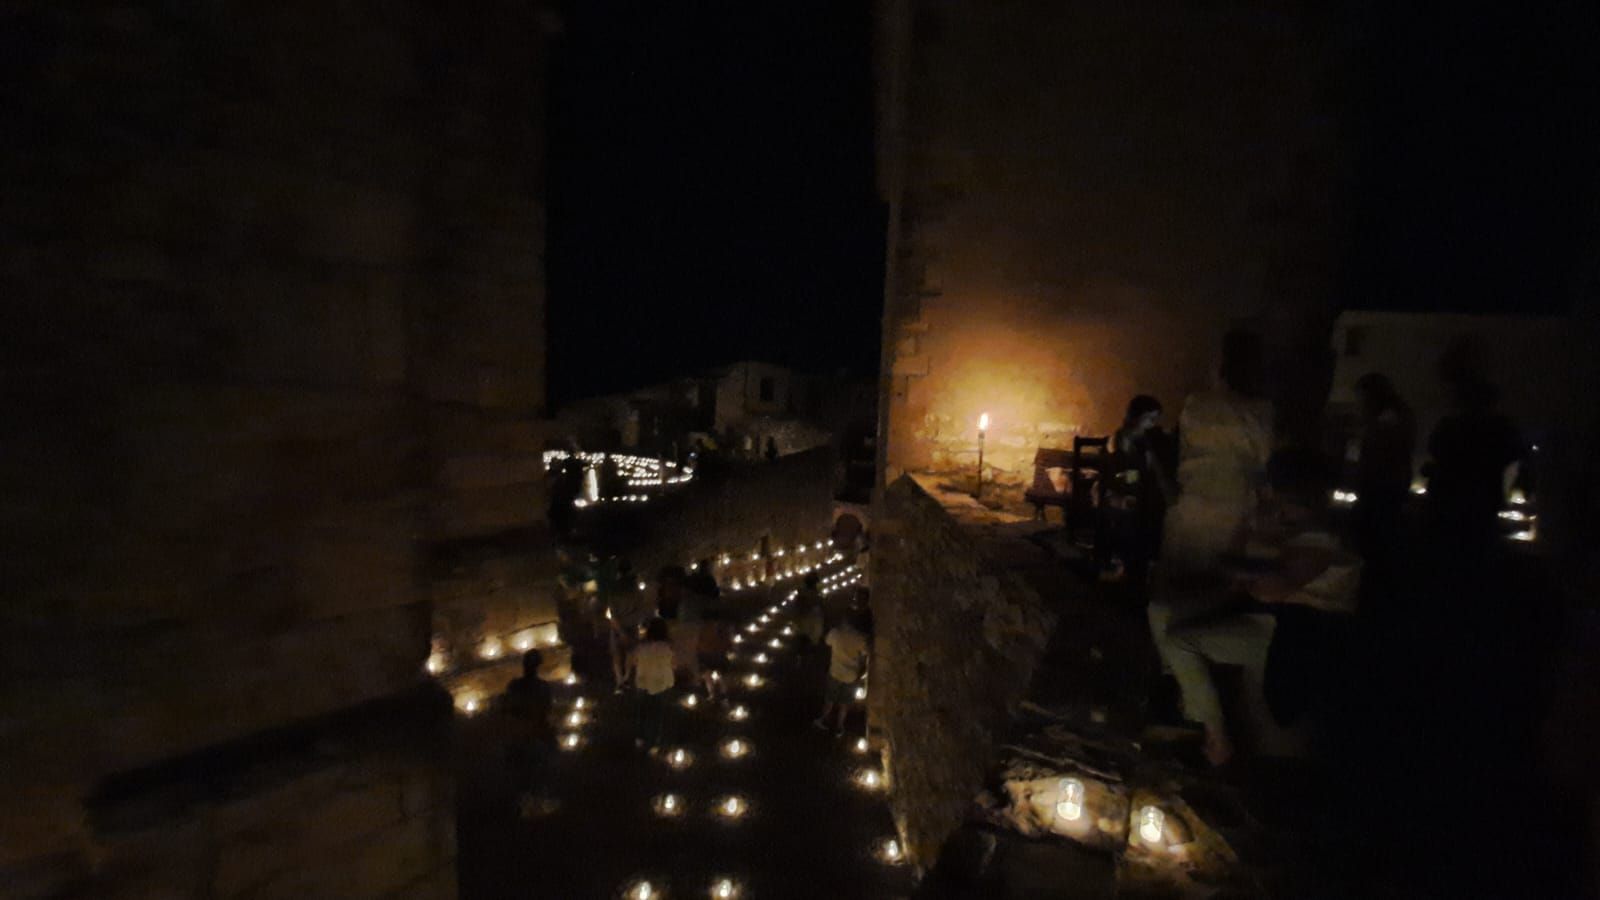 Culla ilumina su casco histórico con 5.500 velas